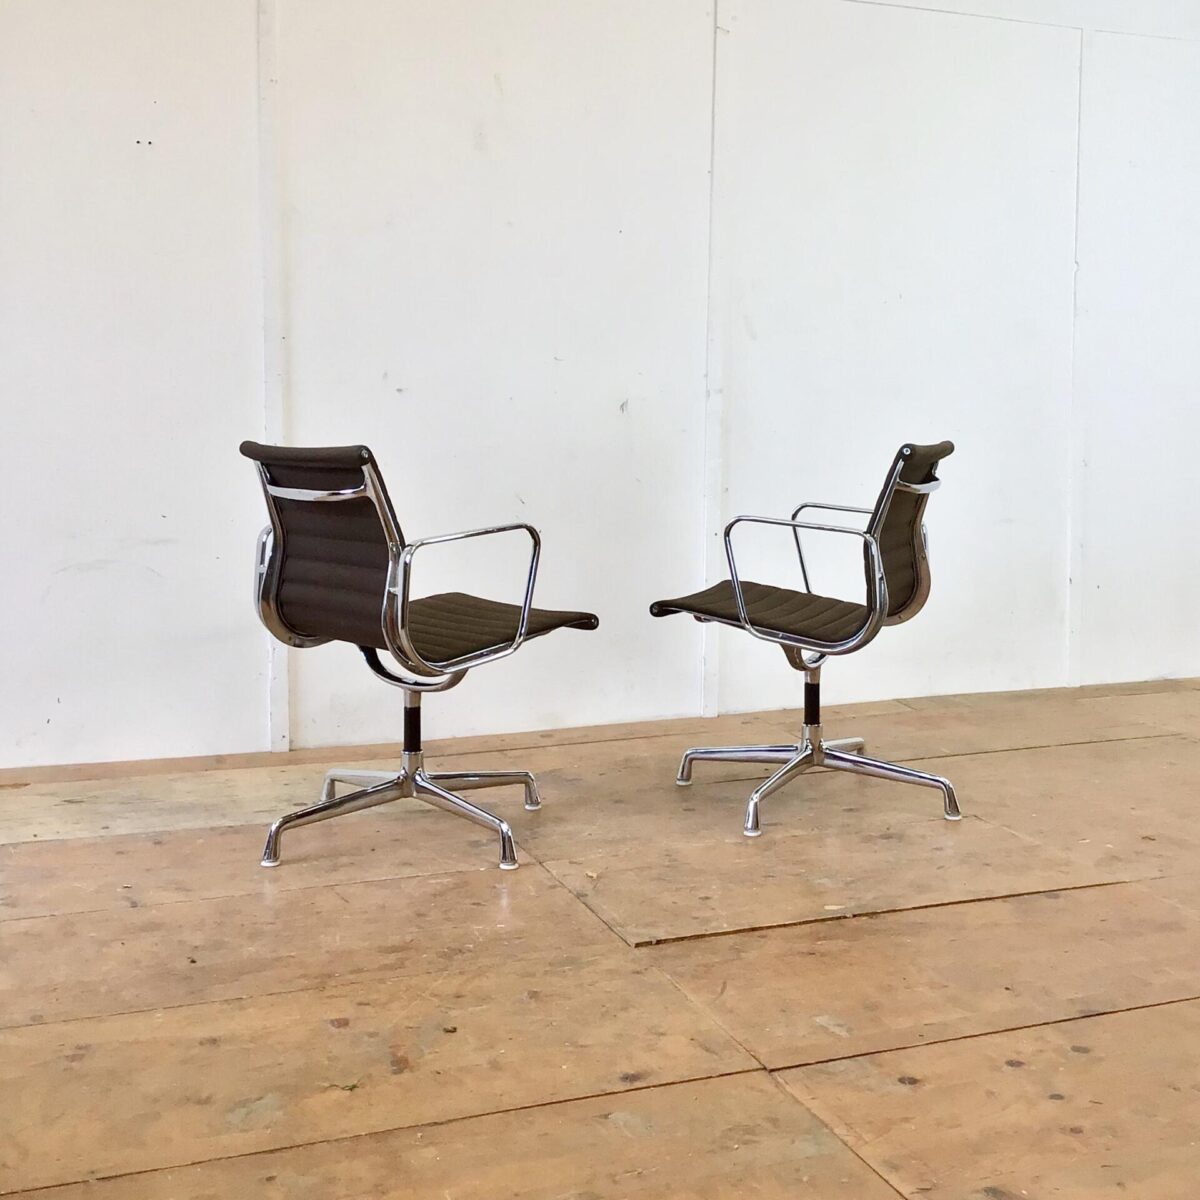 Vitra Aluminium Chair EA 108 von Charles & Ray Eames. Der braune Stoff ist an den Ecken minimal heller. Die verchromten Armlehnen haben ein paar Kratze, ansonsten sind die Sessel in sehr gepflegten, sauberen Zustand. Preis pro Stuhl.